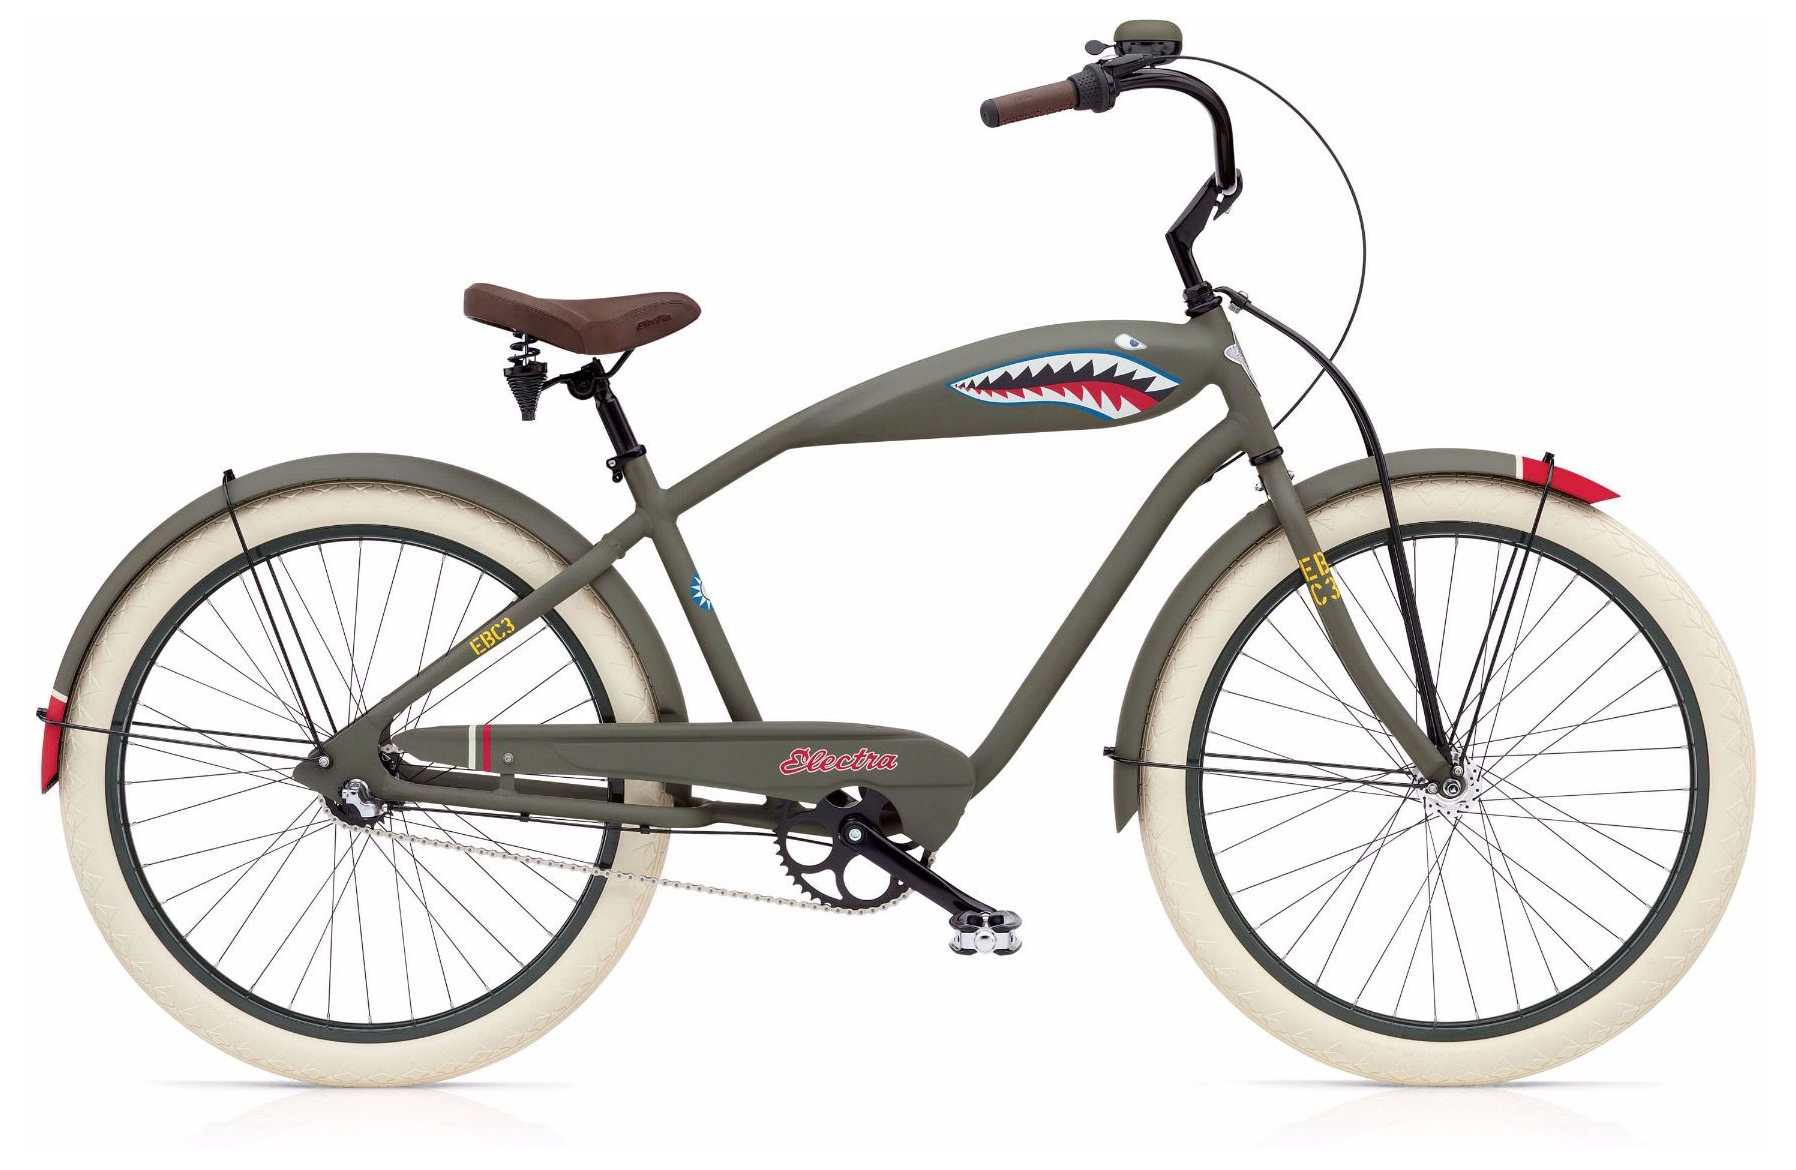  Велосипед Electra Tiger Shark 3i 2019